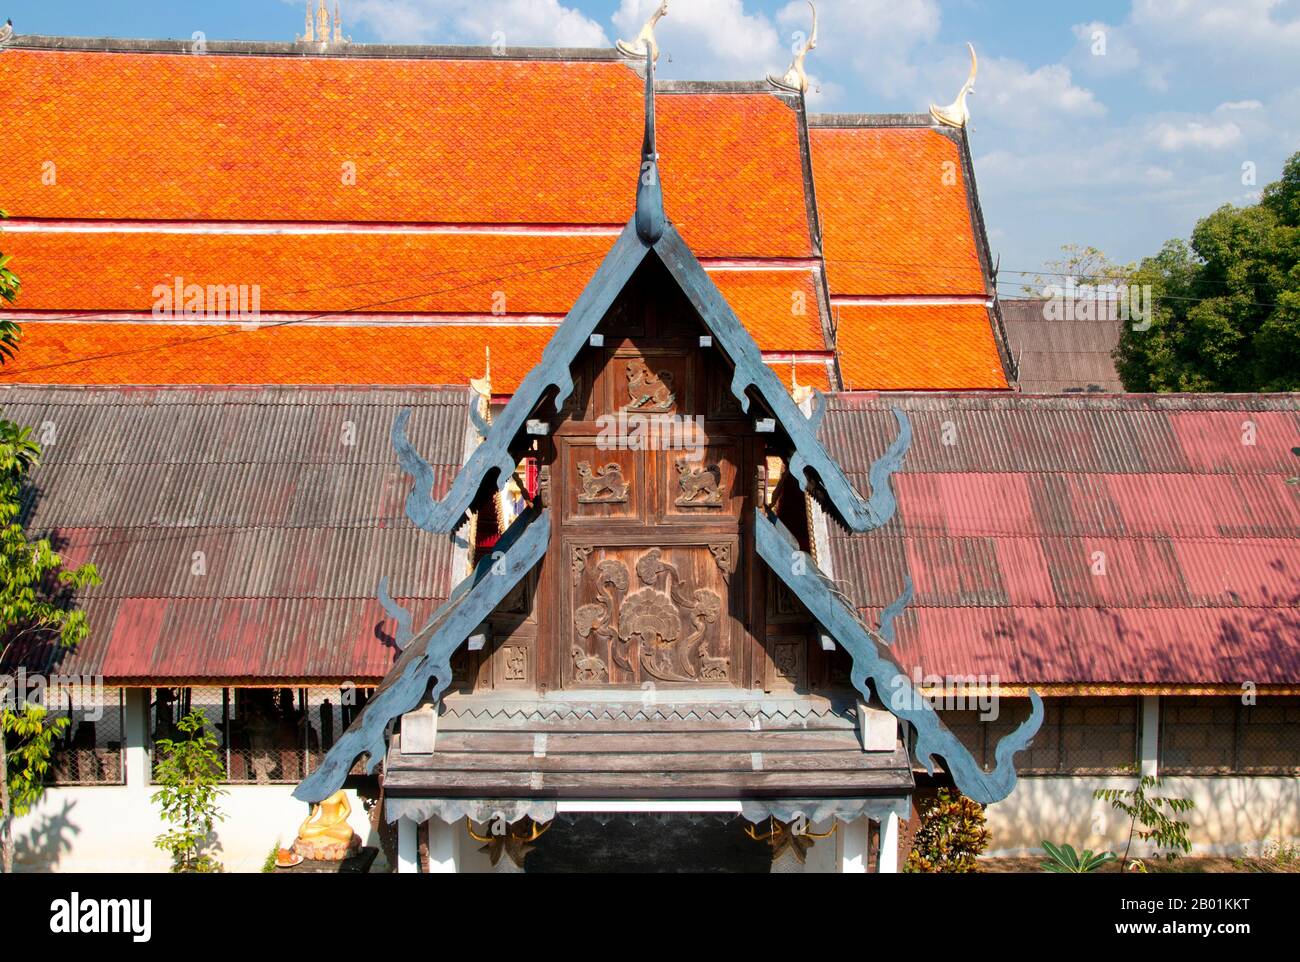 Thailand: Geschnitzte hölzerne Binnenschiffbretter am östlichen unteren Terrasseneingang, Wat Pong Sanuk Tai, Lampang, Provinz Lampang, Nordthailand. Wat Pong Sanuk Tai oder „das Kloster des Südlichen Fun Marsh“ wurde im späten 18. Jahrhundert erbaut, in dem burmesische und Lanna-Architekturstile kombiniert wurden. Der mondop des Tempels ist eines der besten Beispiele seiner Art und eine wunderbare Mischung aus Lanna und burmesischer Handwerkskunst. Lampang wurde ursprünglich während der Dvaravati-Zeit des 7. Jahrhunderts gegründet. Aus dieser frühen Zeit ist nichts mehr erhalten, aber die Stadt ist reich an Tempeln, von denen viele einen burmesischen Geschmack haben. Stockfoto